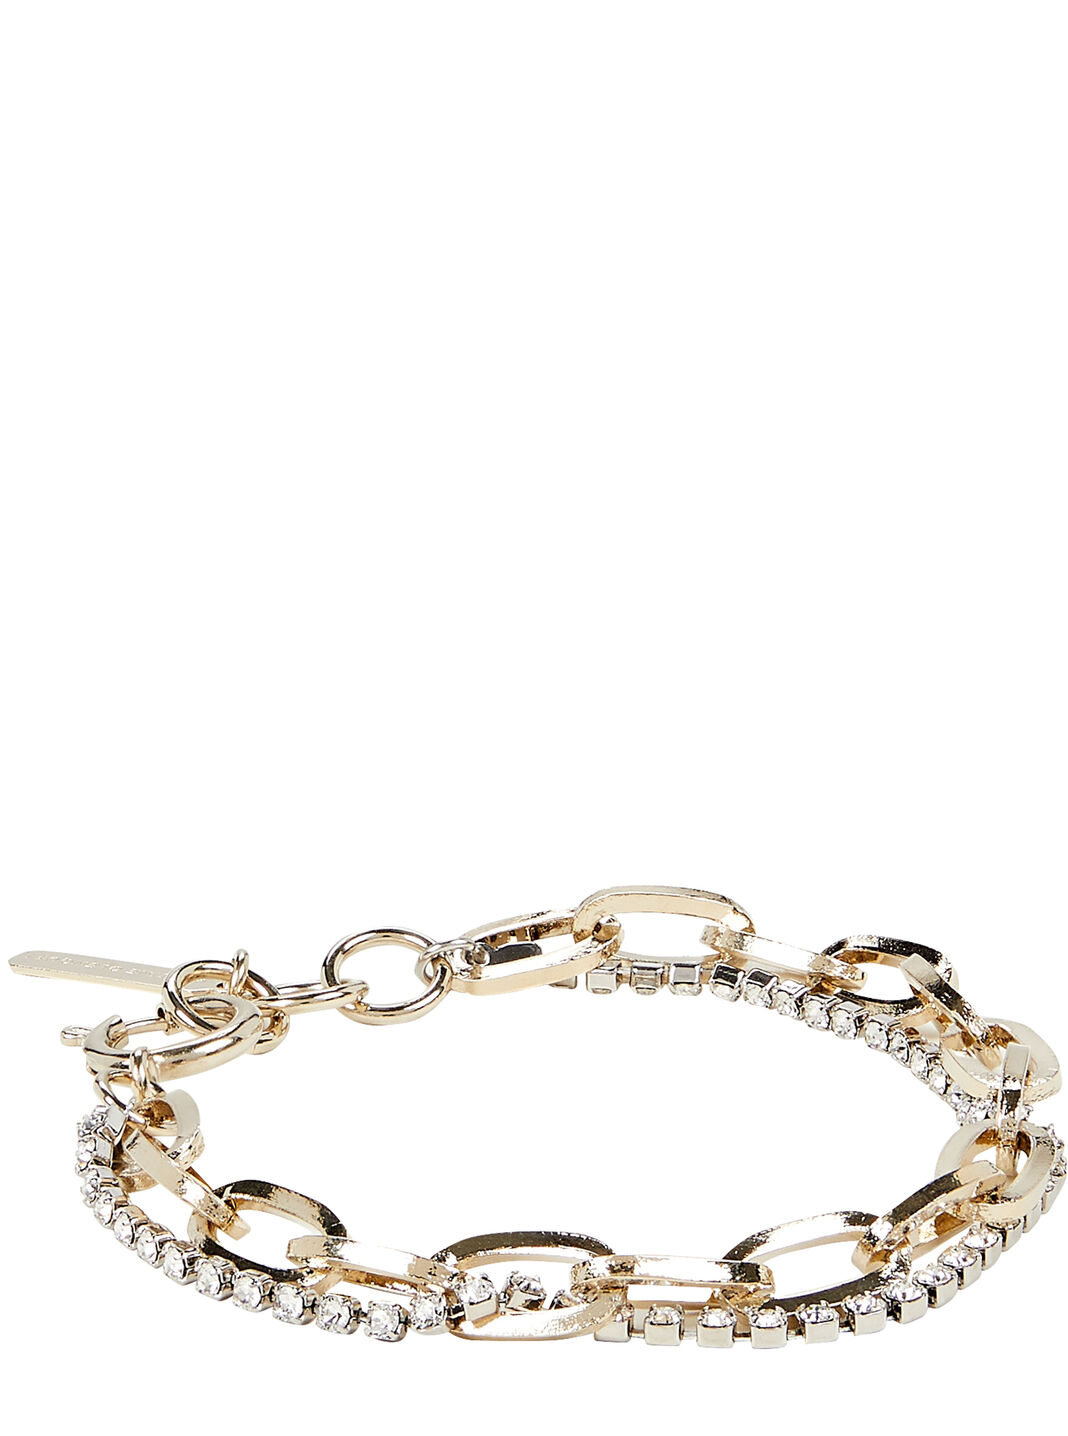 Kirsten 24k Gold-Plated Crystal Bracelet